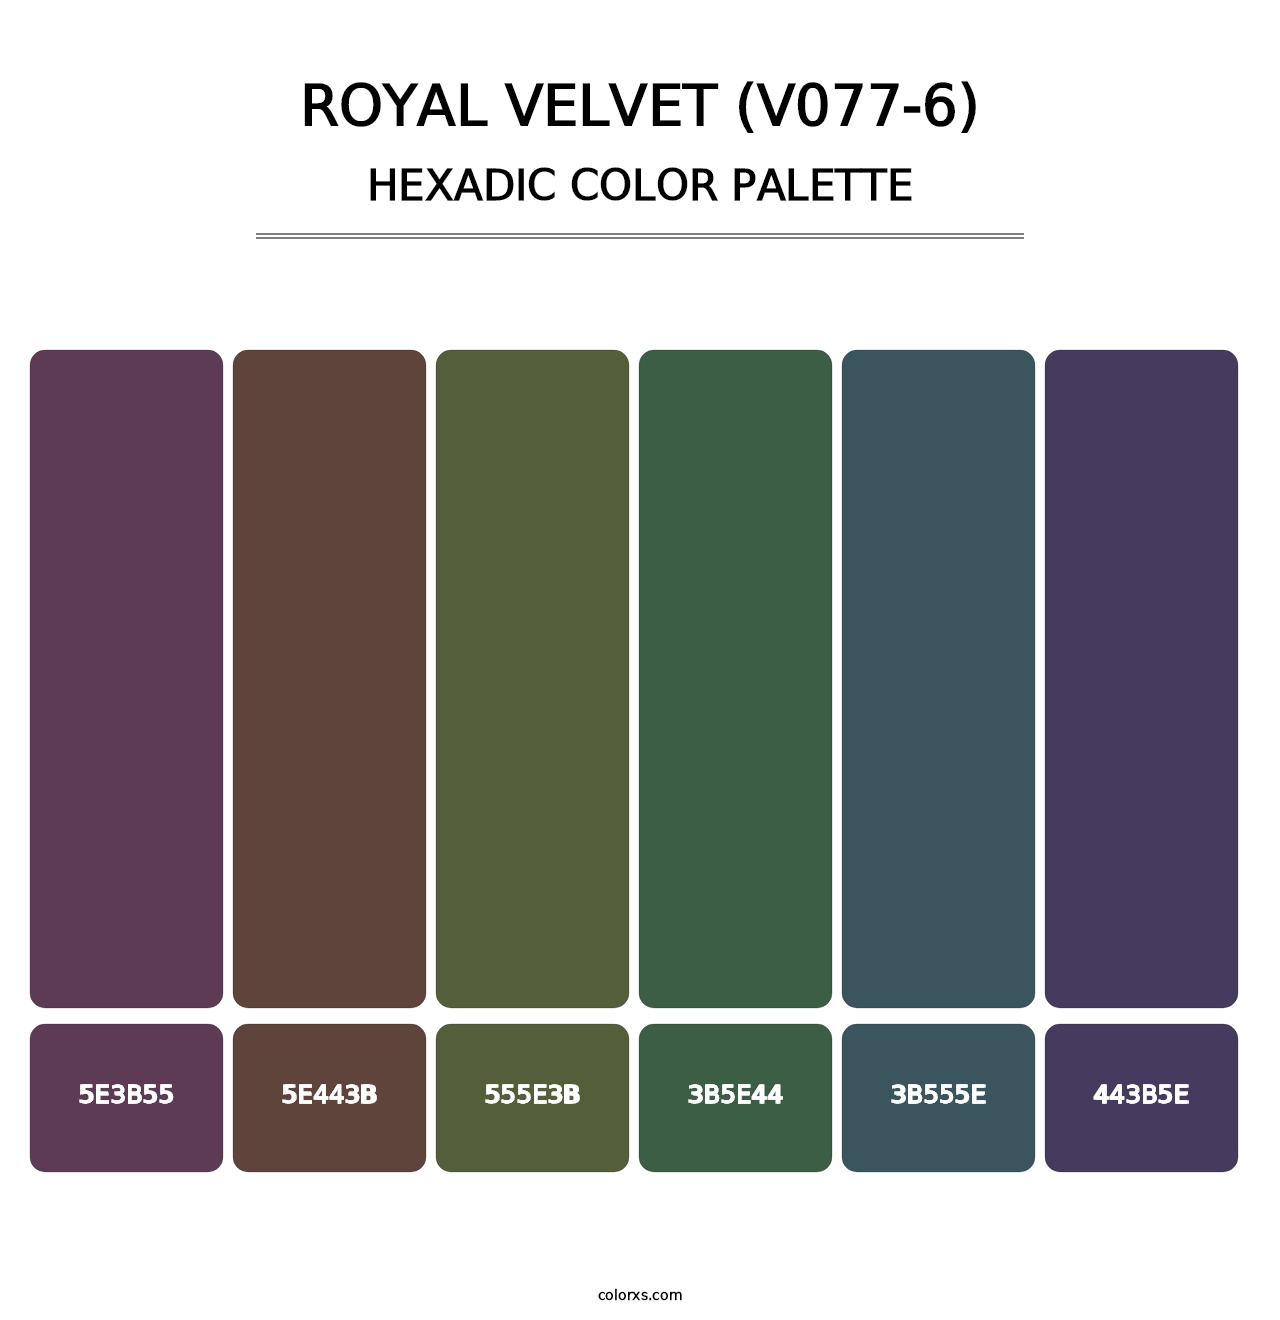 Royal Velvet (V077-6) - Hexadic Color Palette